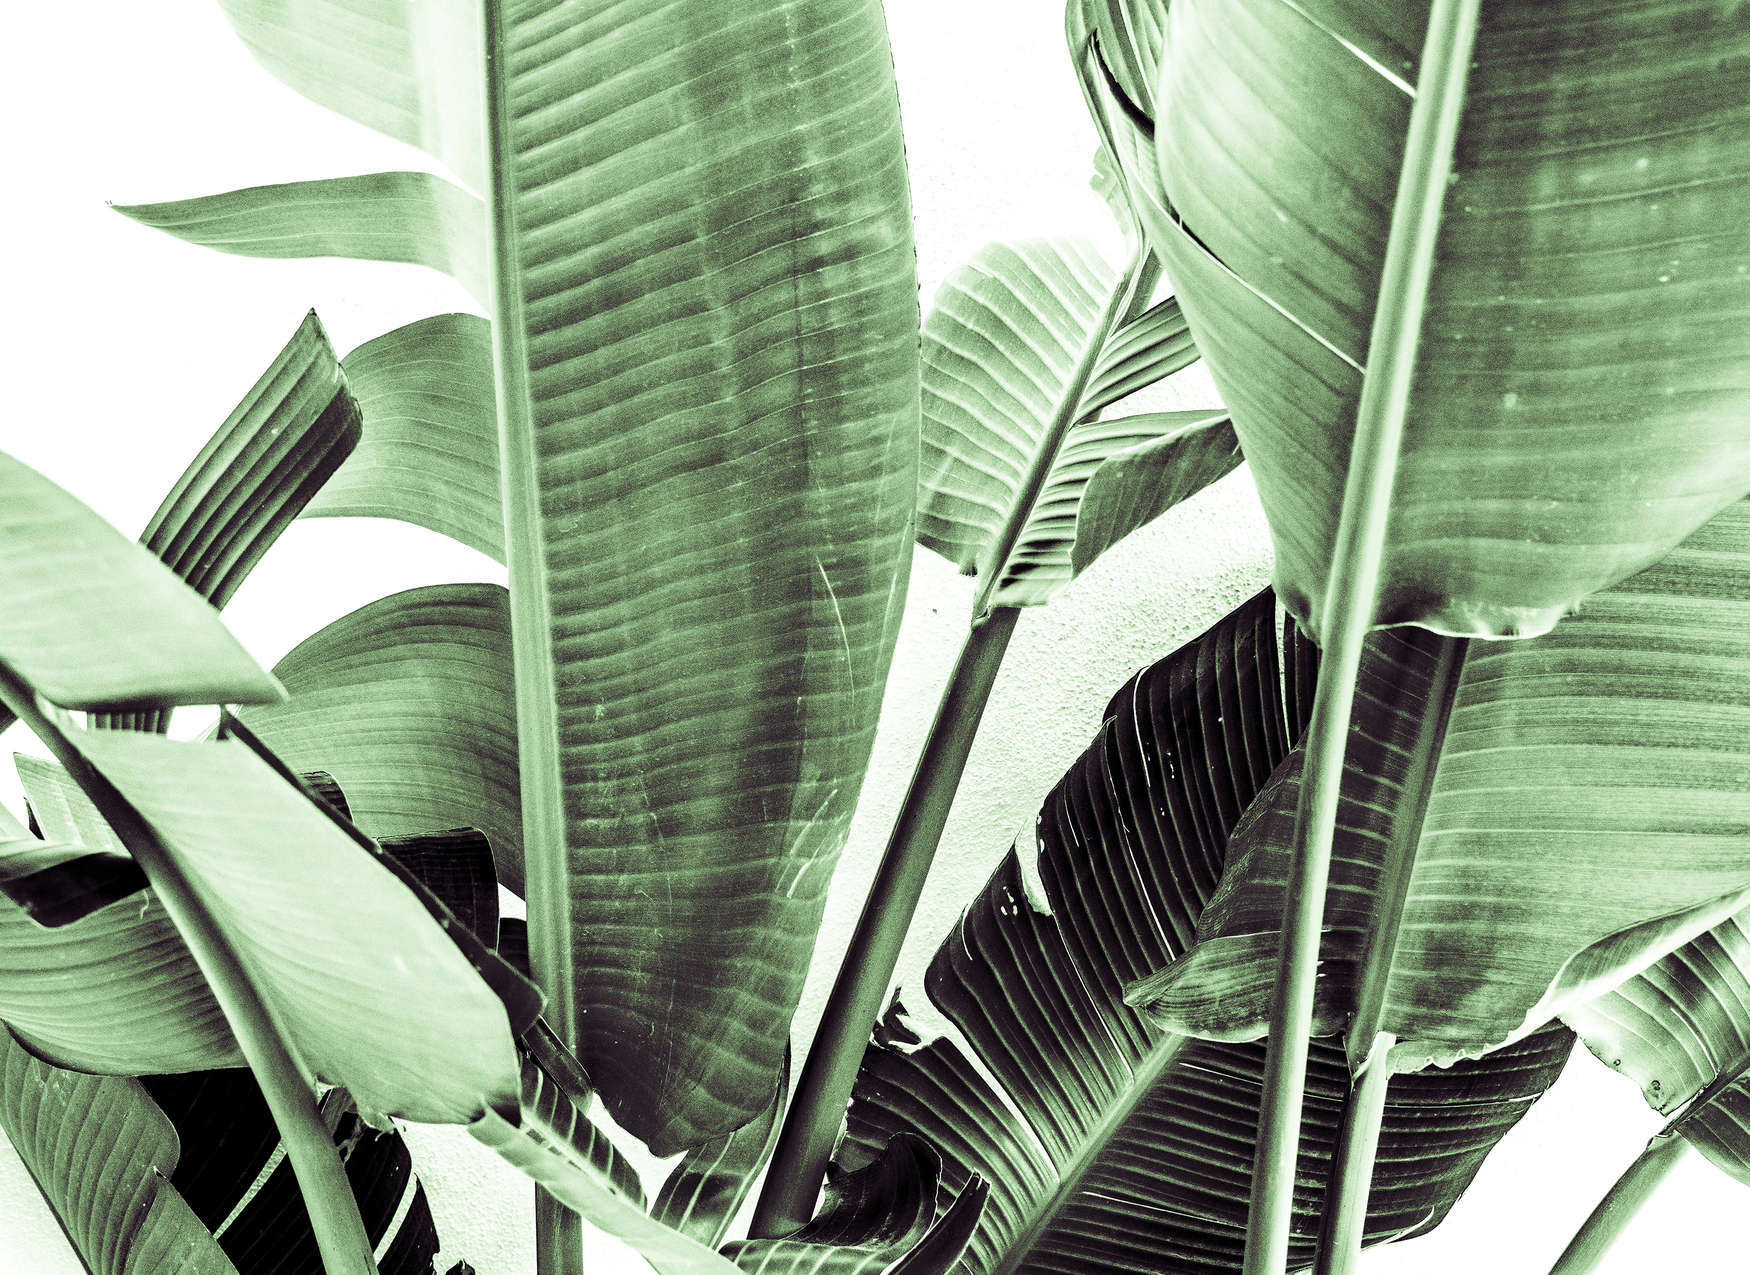             Palm Leaf Detail Wallpaper - Green, White
        